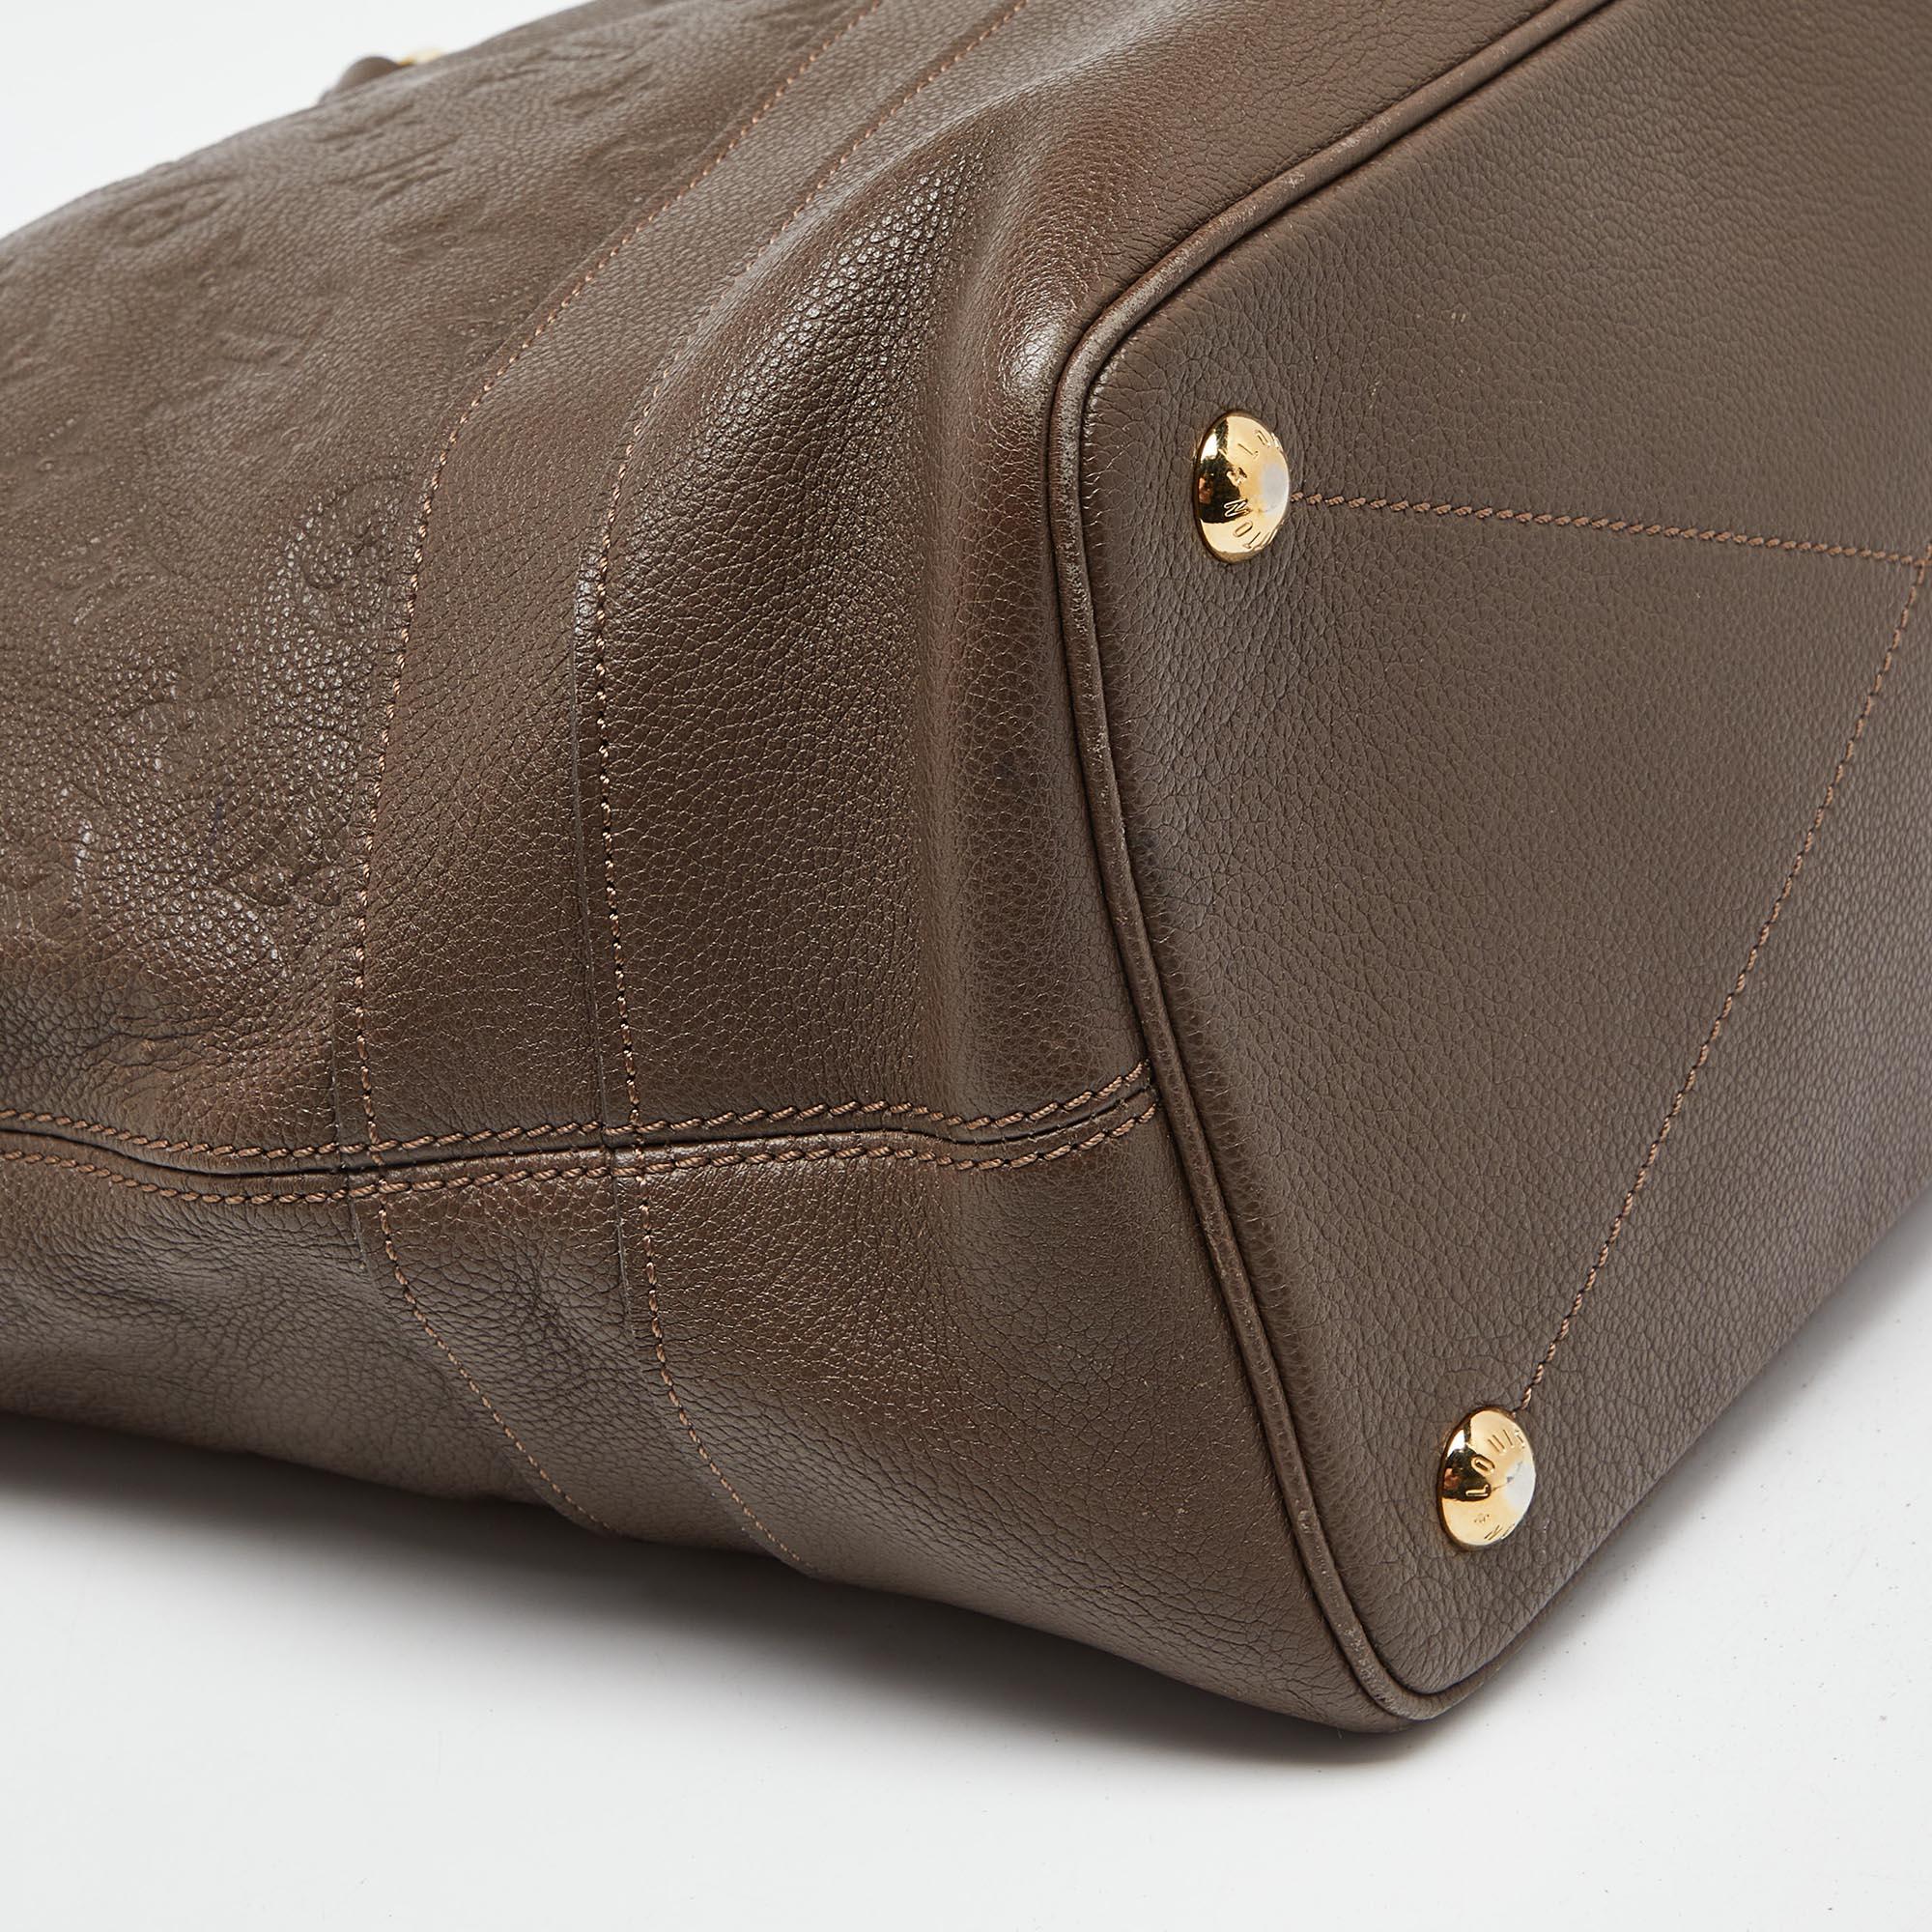 Louis Vuitton Ombre Monogram Empreinte Leather Citadine GM Bag For Sale 7